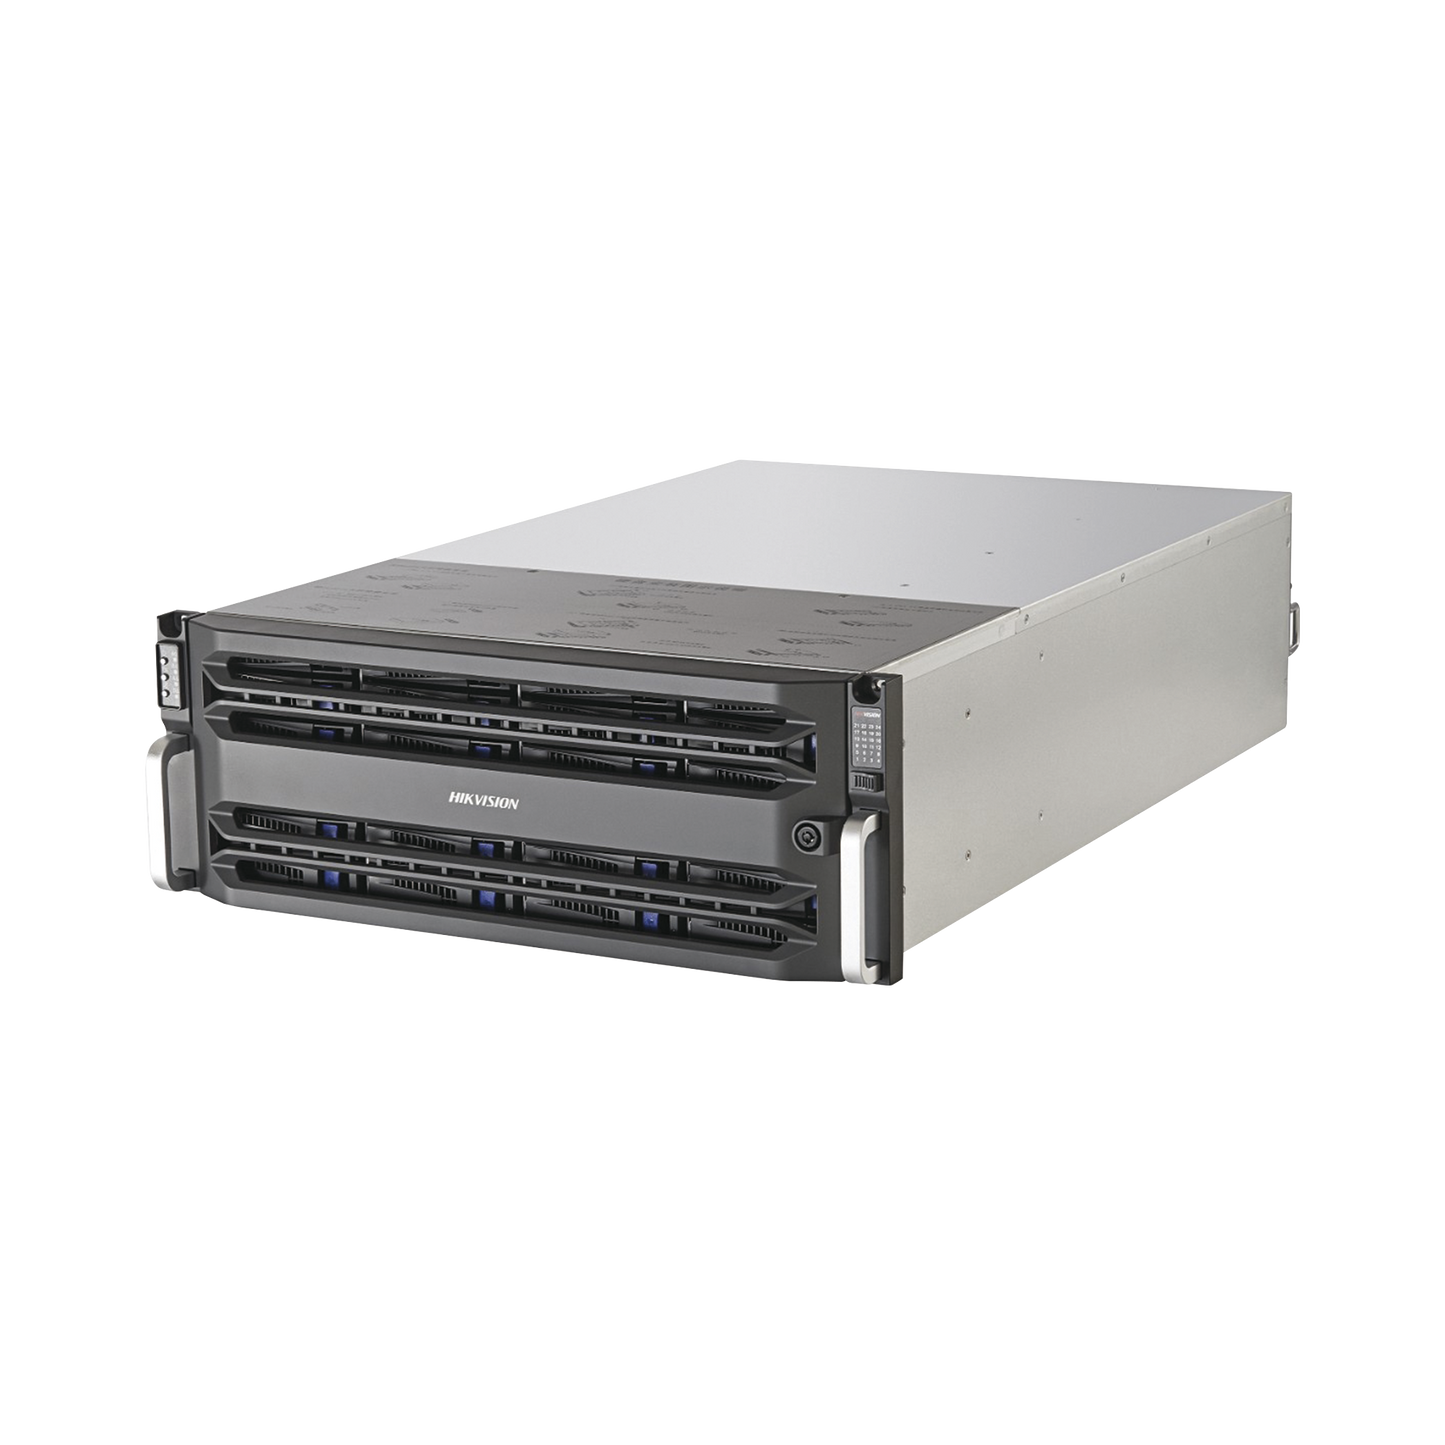 Servidor de Almacenamiento en Red / Soporta 24 Bahías de Disco Duro (No Incluye Discos Duros) / RAID / iSCSI / Graba 320 canales IP / Controlador Simple